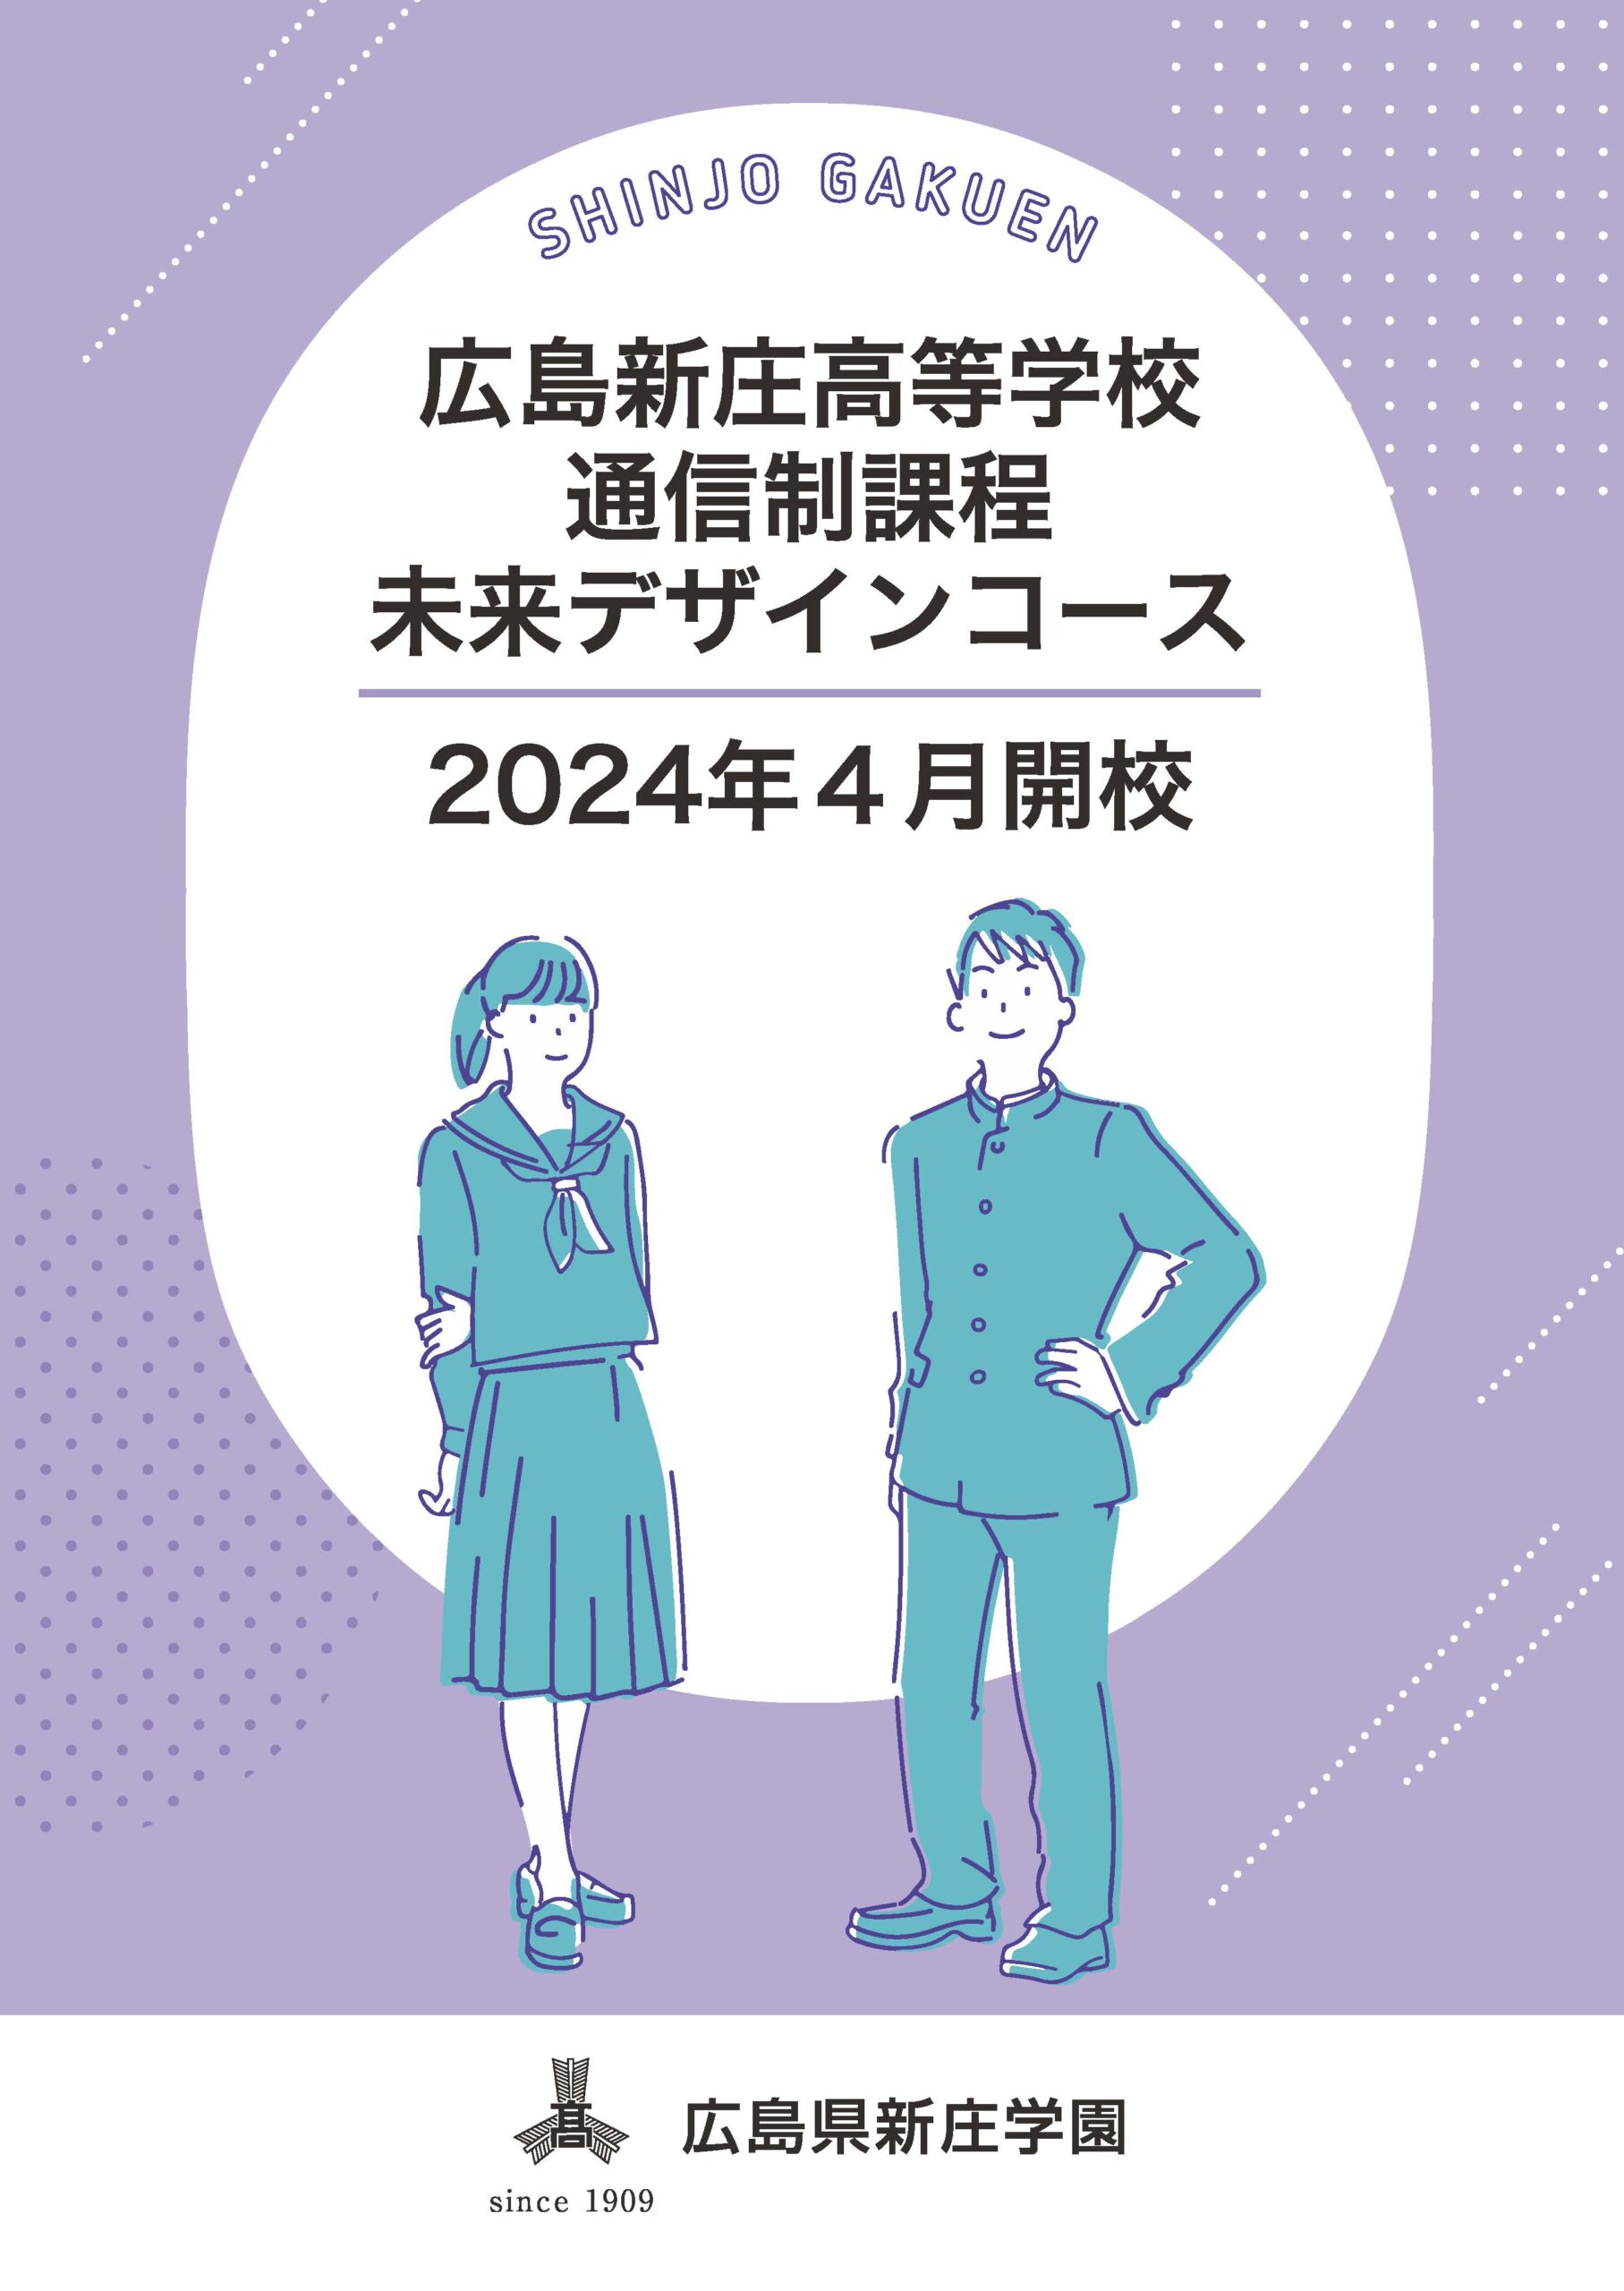 広島新庄高等学校に通信制課程が2024年開校します